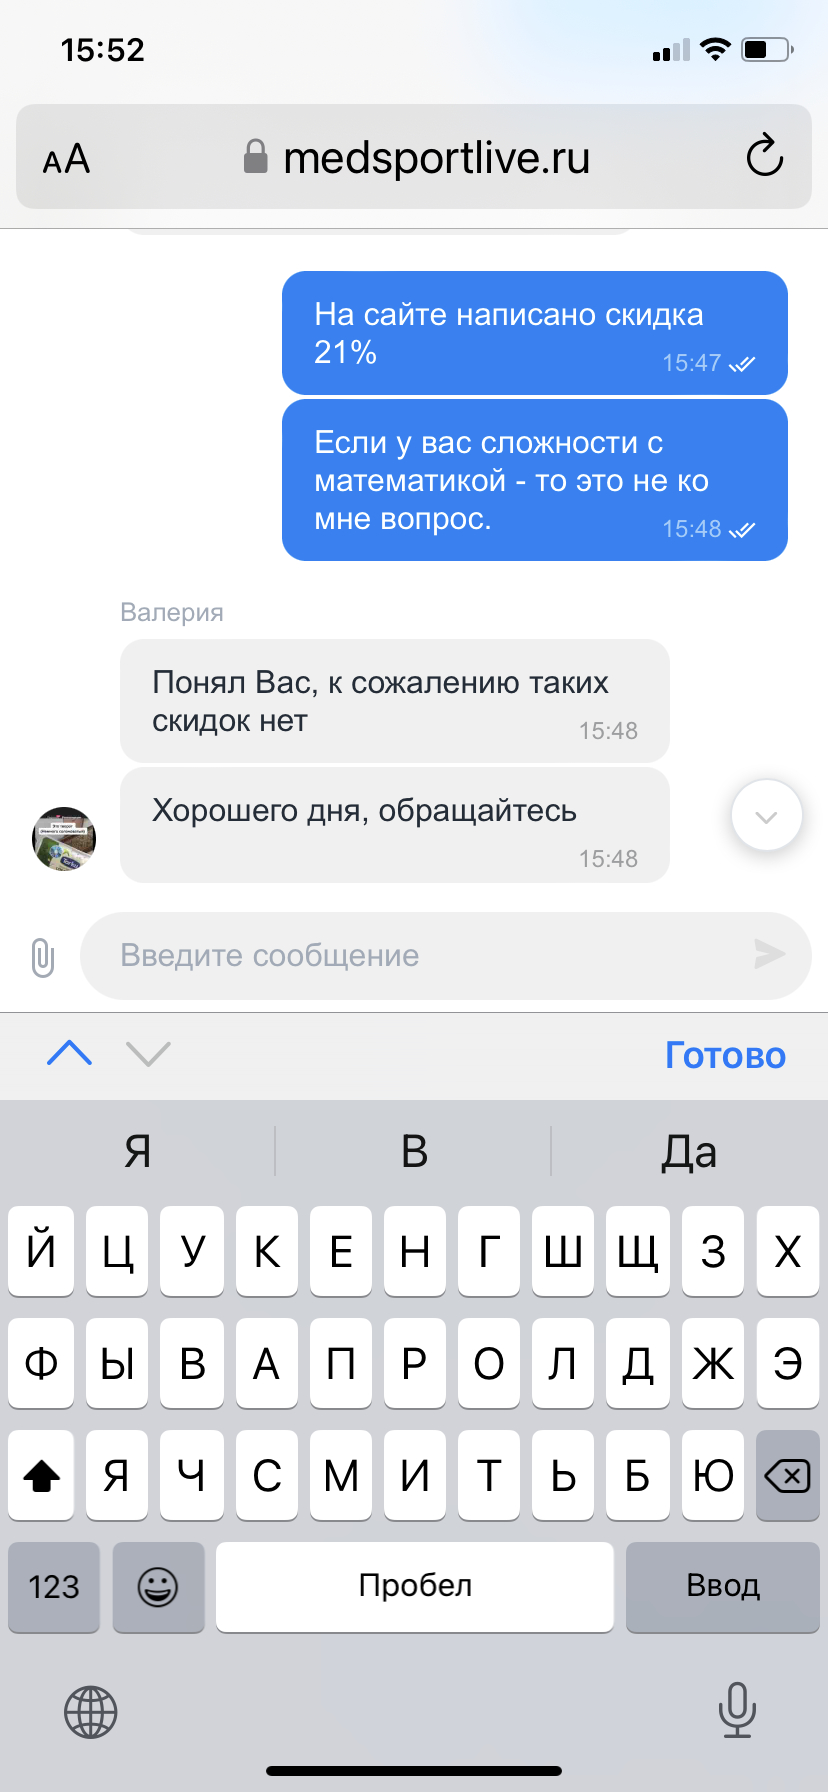 Тренажеры МЕДСПОРТЛАЙФ - Отзыв о компании